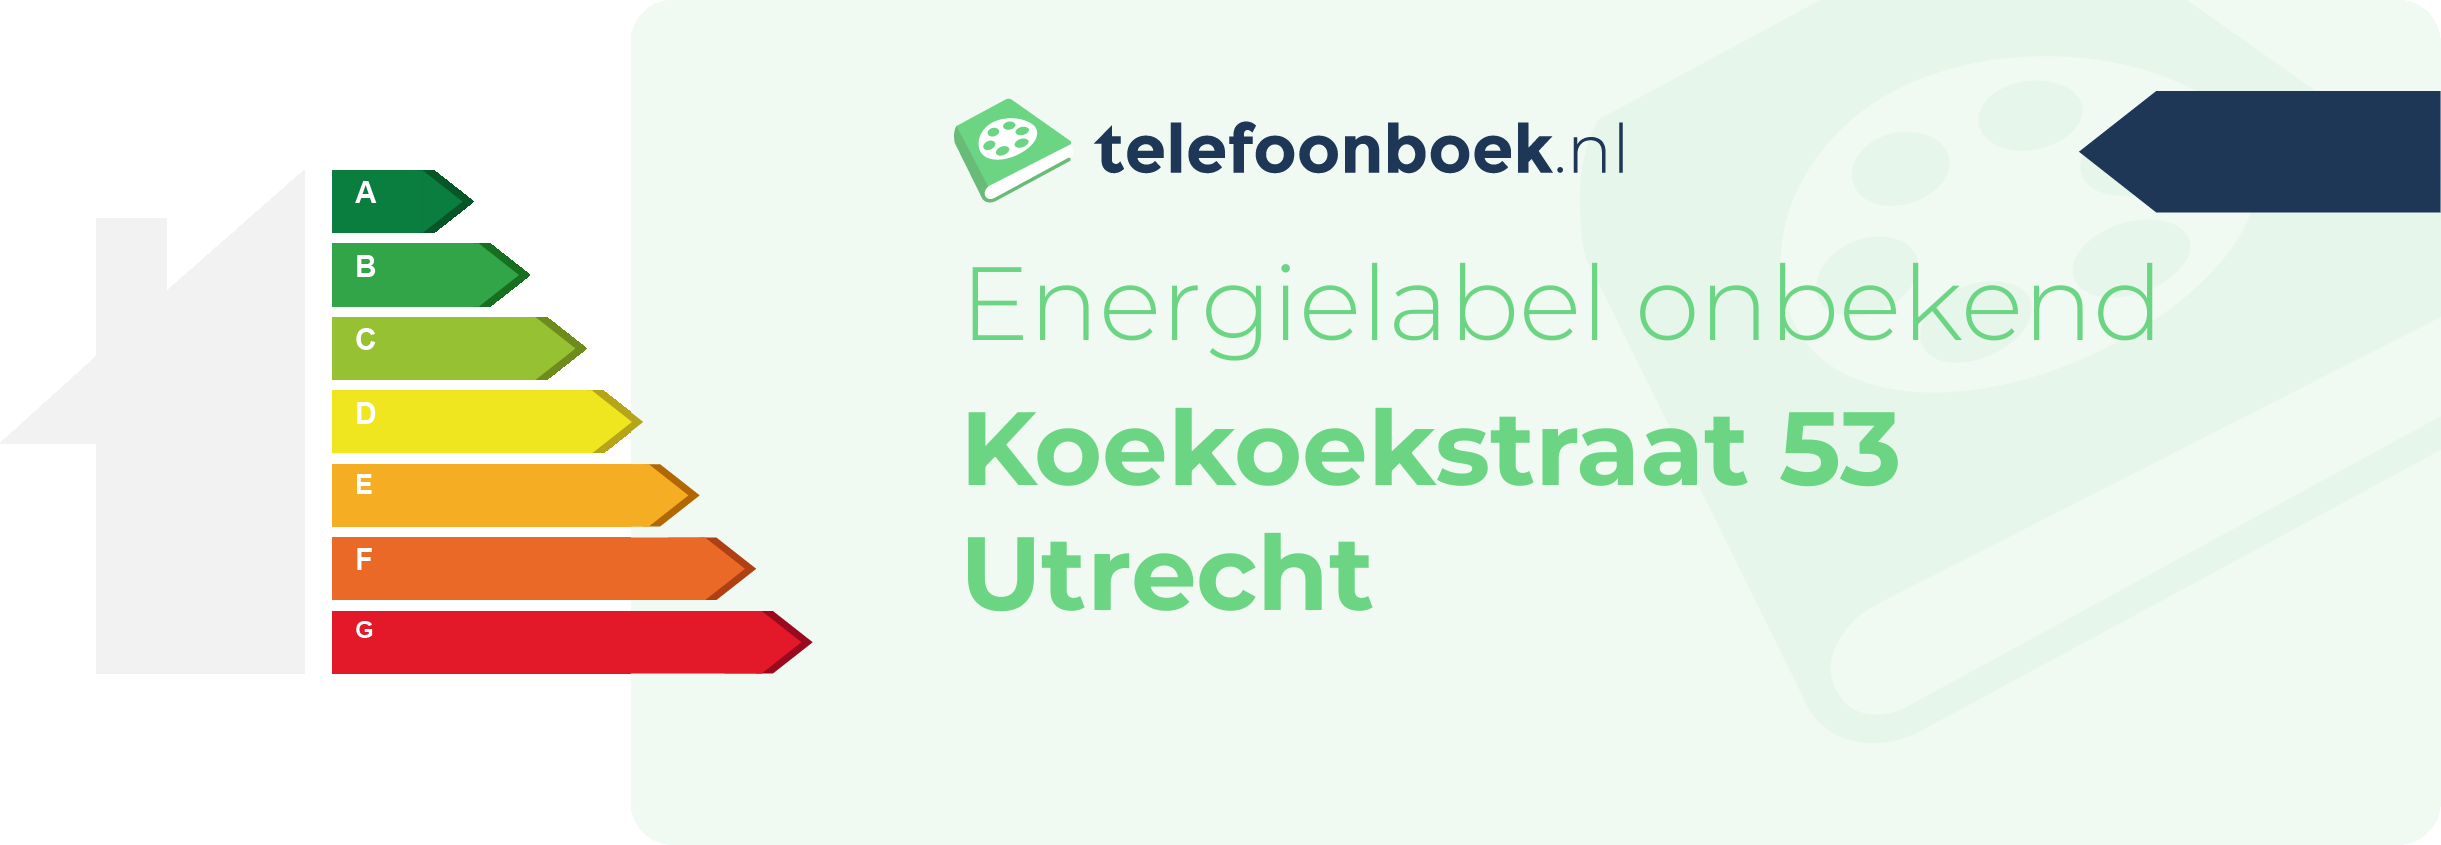 Energielabel Koekoekstraat 53 Utrecht